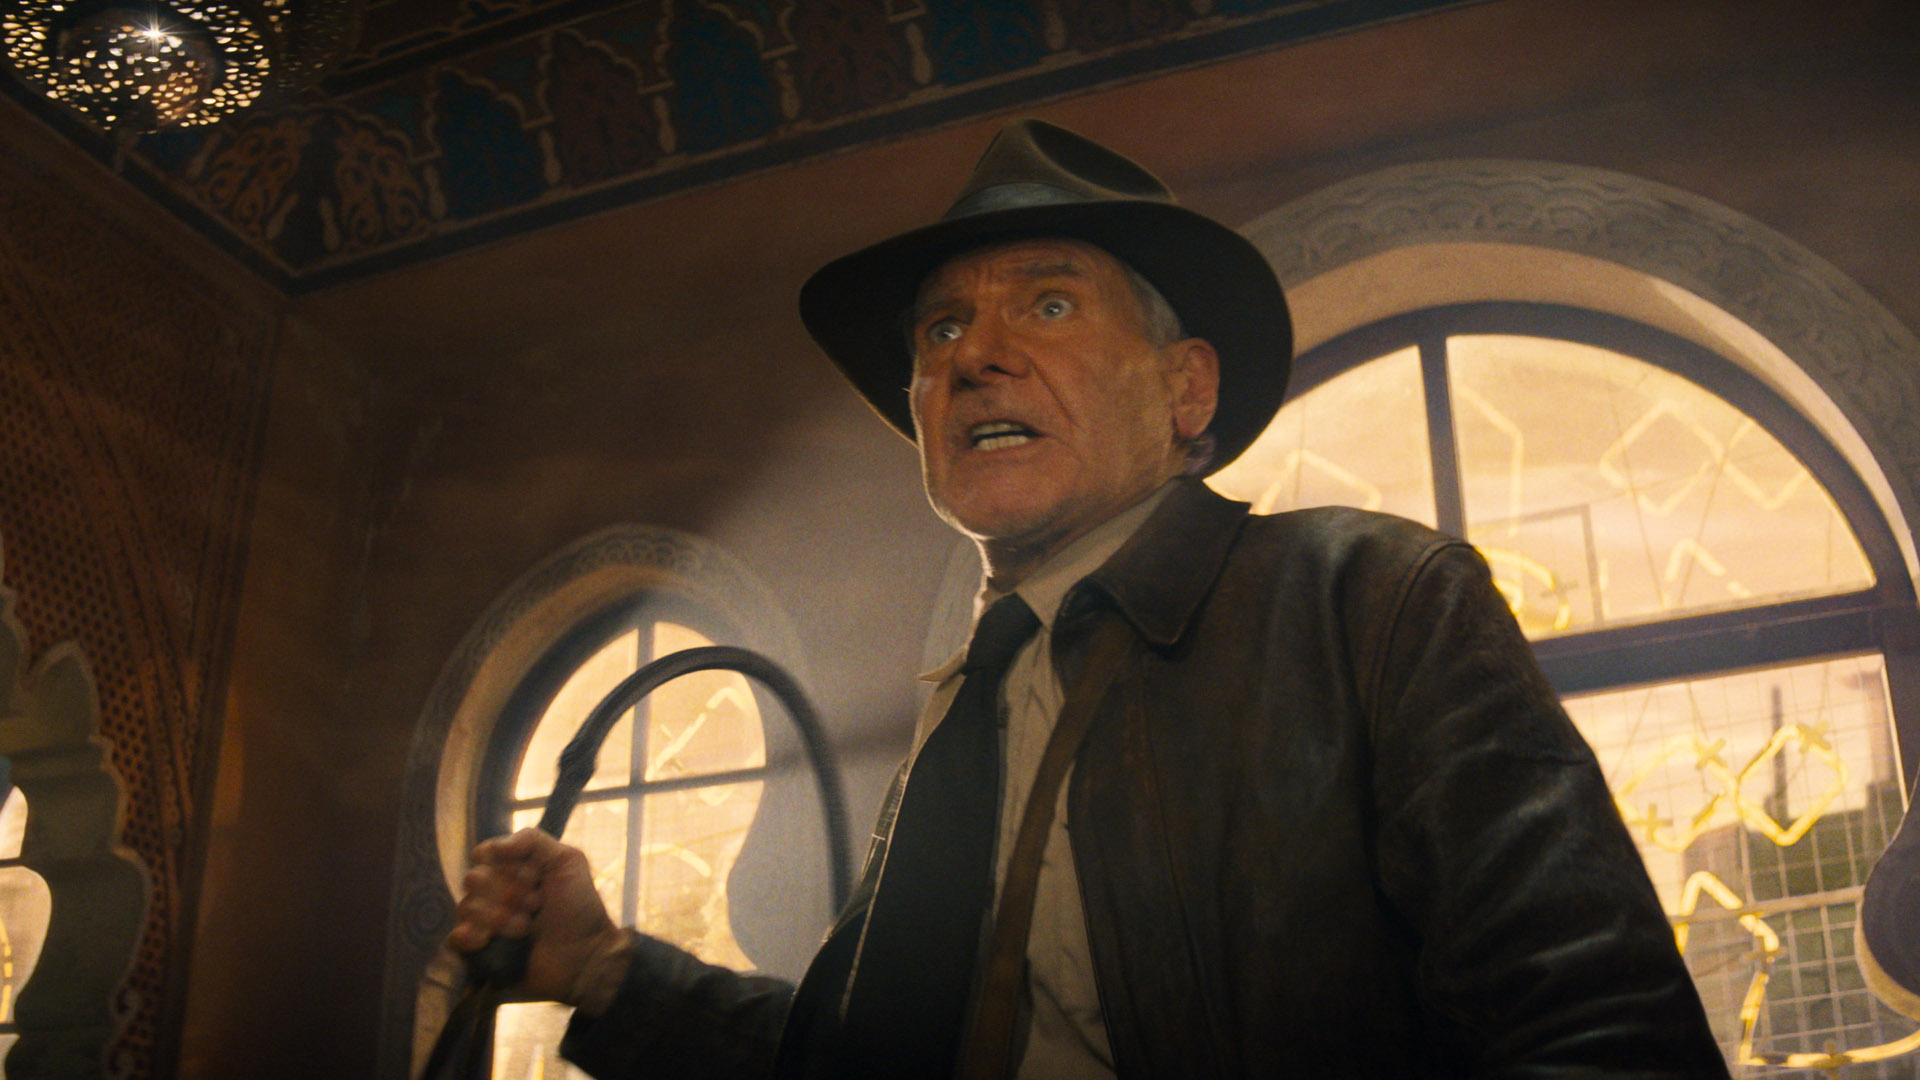 Indy schneidet eine ernste Grimasse, während er im neuesten Abenteuer (Indiana Jones und das Rad des Schicksals) zum Peitschenhieb ansetzt